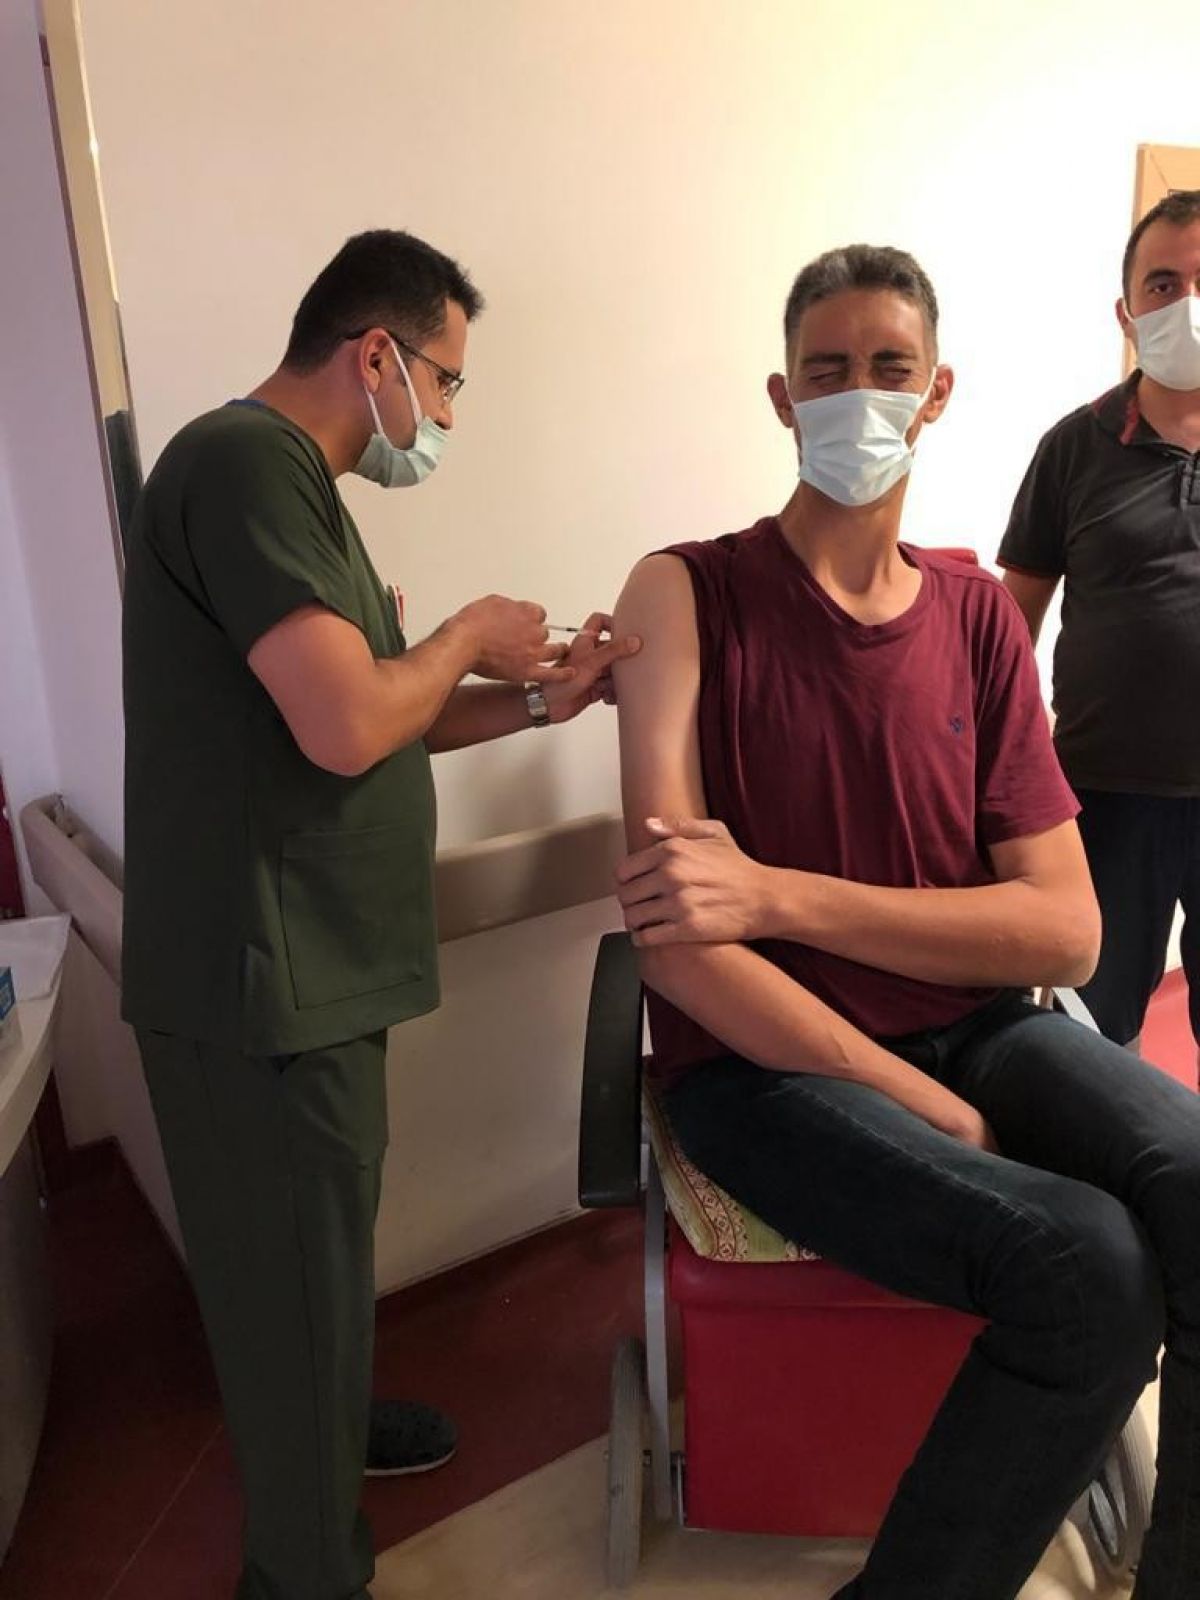 Dünyanın en uzun boylu adamı koronavirüs aşısı oldu #2